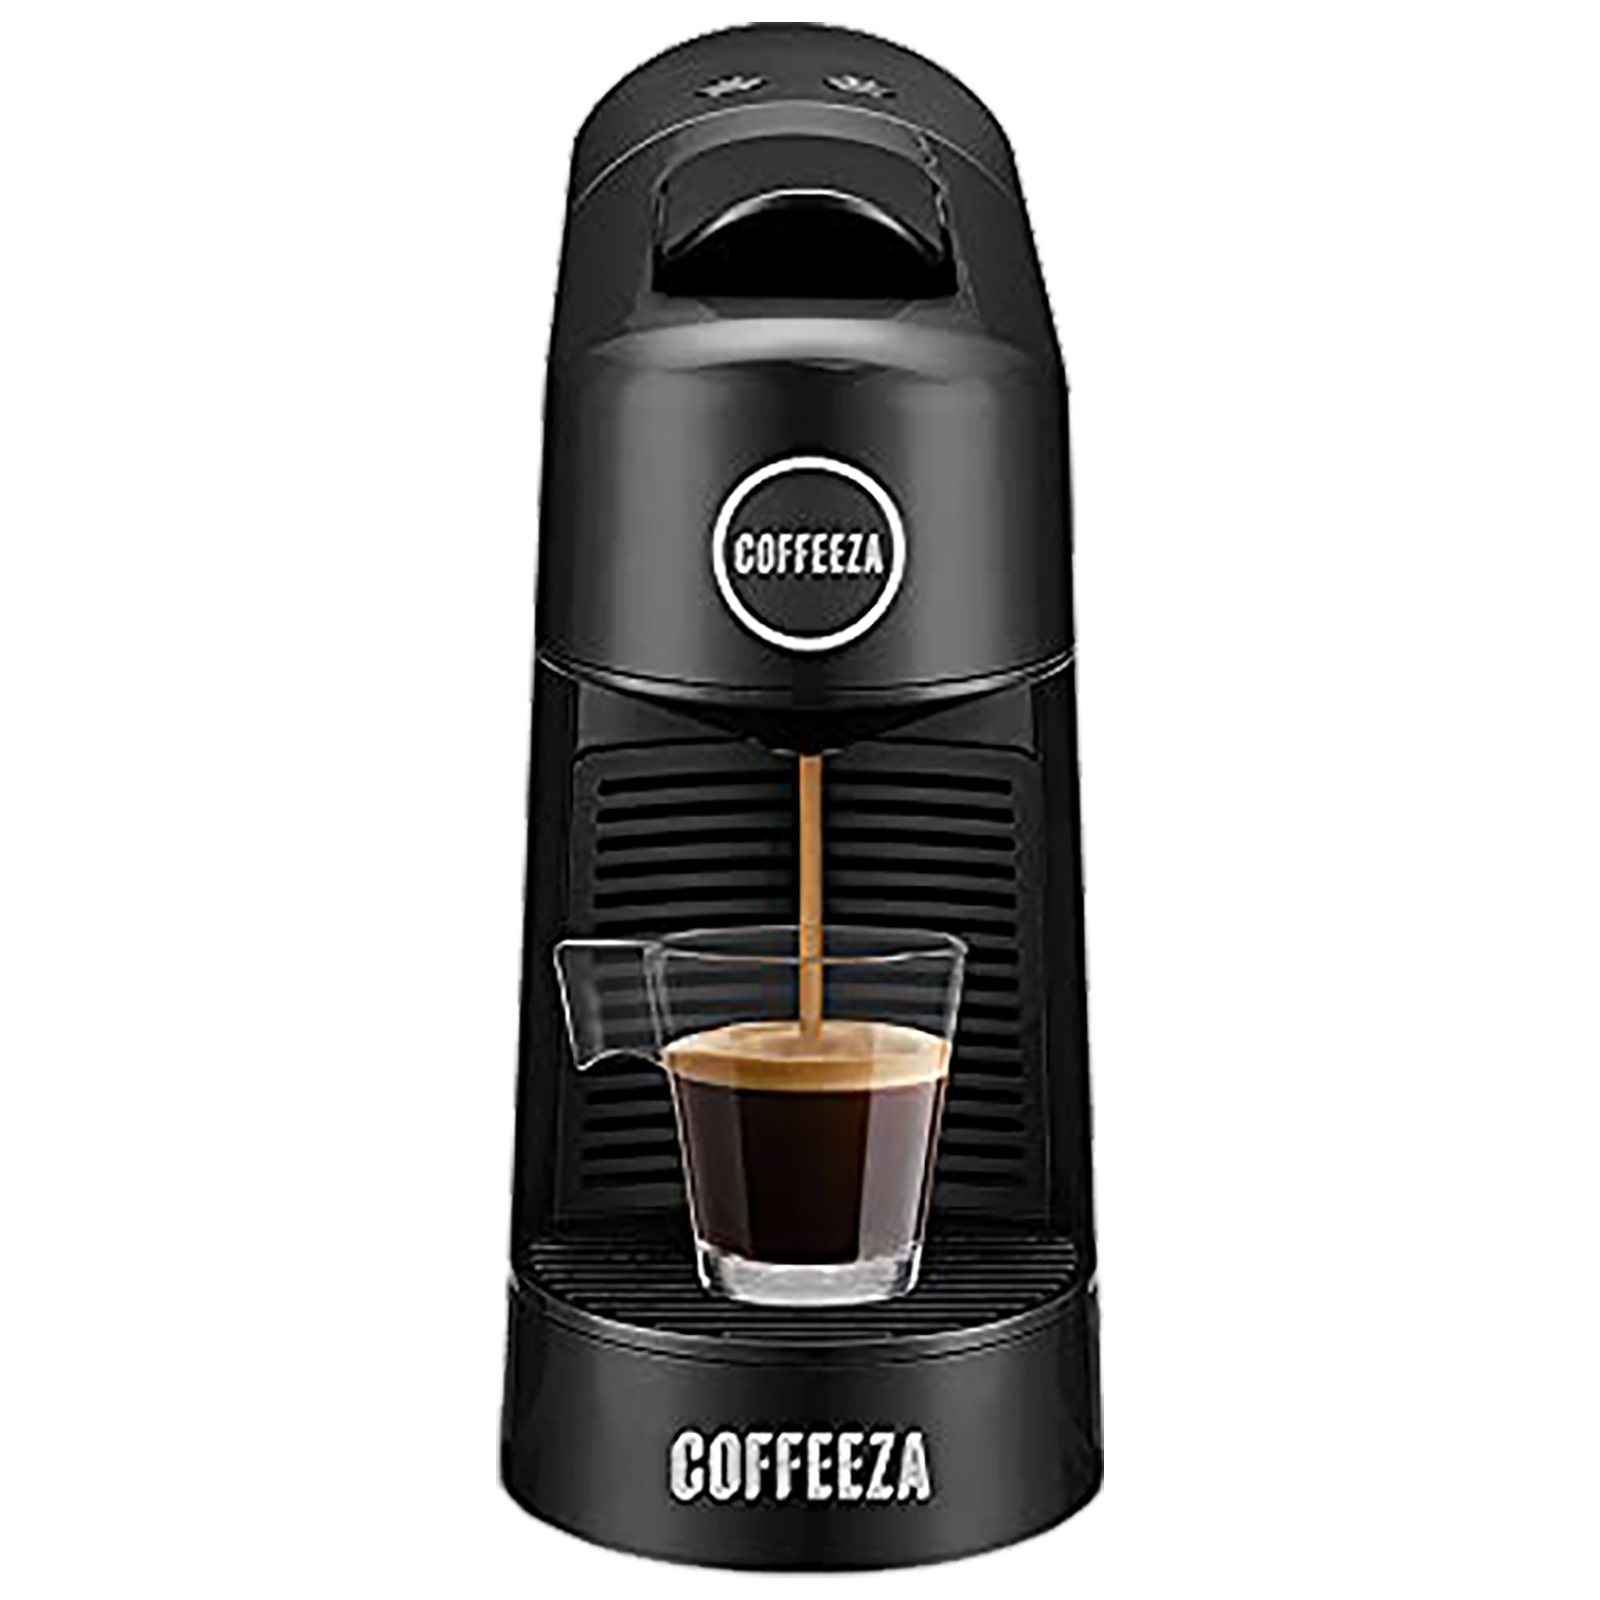 Coffeeza - Coffeeza Finero Next Automatic Coffee Maker (Makes Espresso/Lungo & Americano, 60 Capsules Included, CM-FIN2, Black)